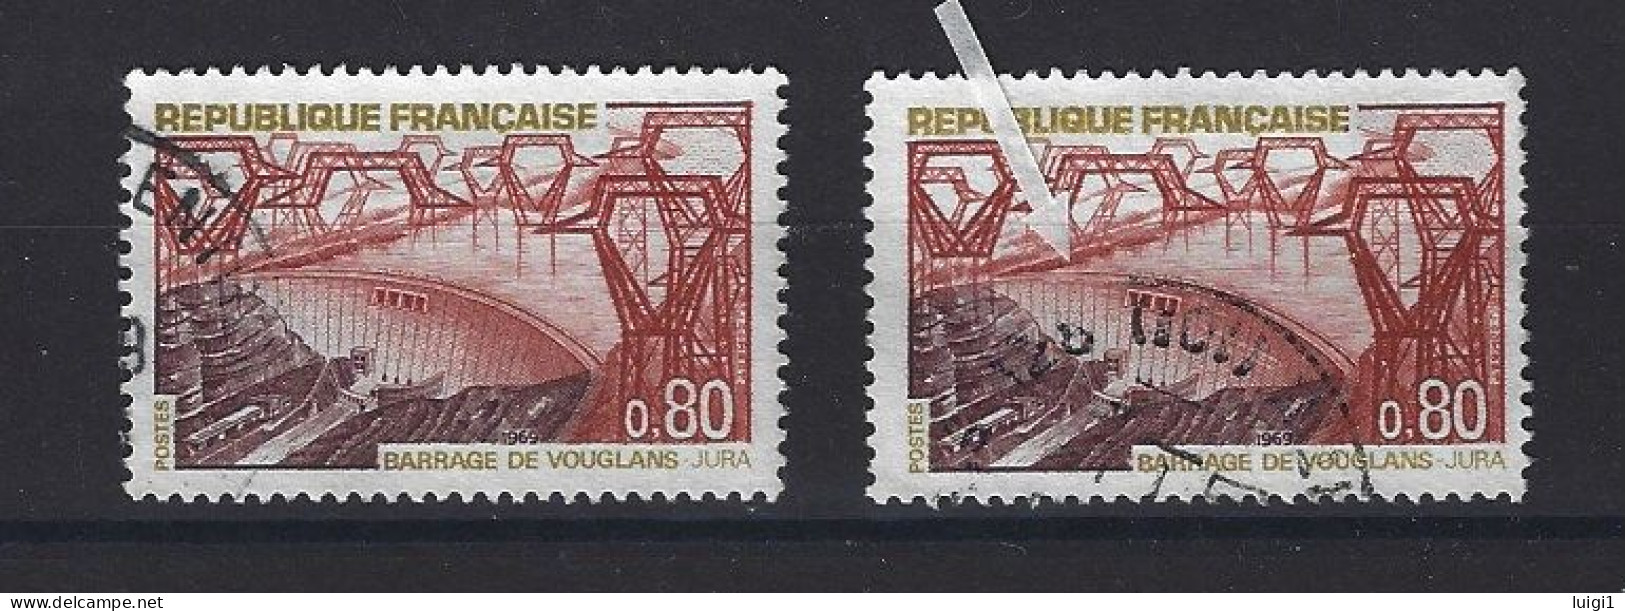 FRANCE 1969 - Y&T N°1583 + N°1583b . 80 C. Barrage De Vouglans. - Variété : Normal + Barrage Rompu. Oblitérés. TB - Gebruikt